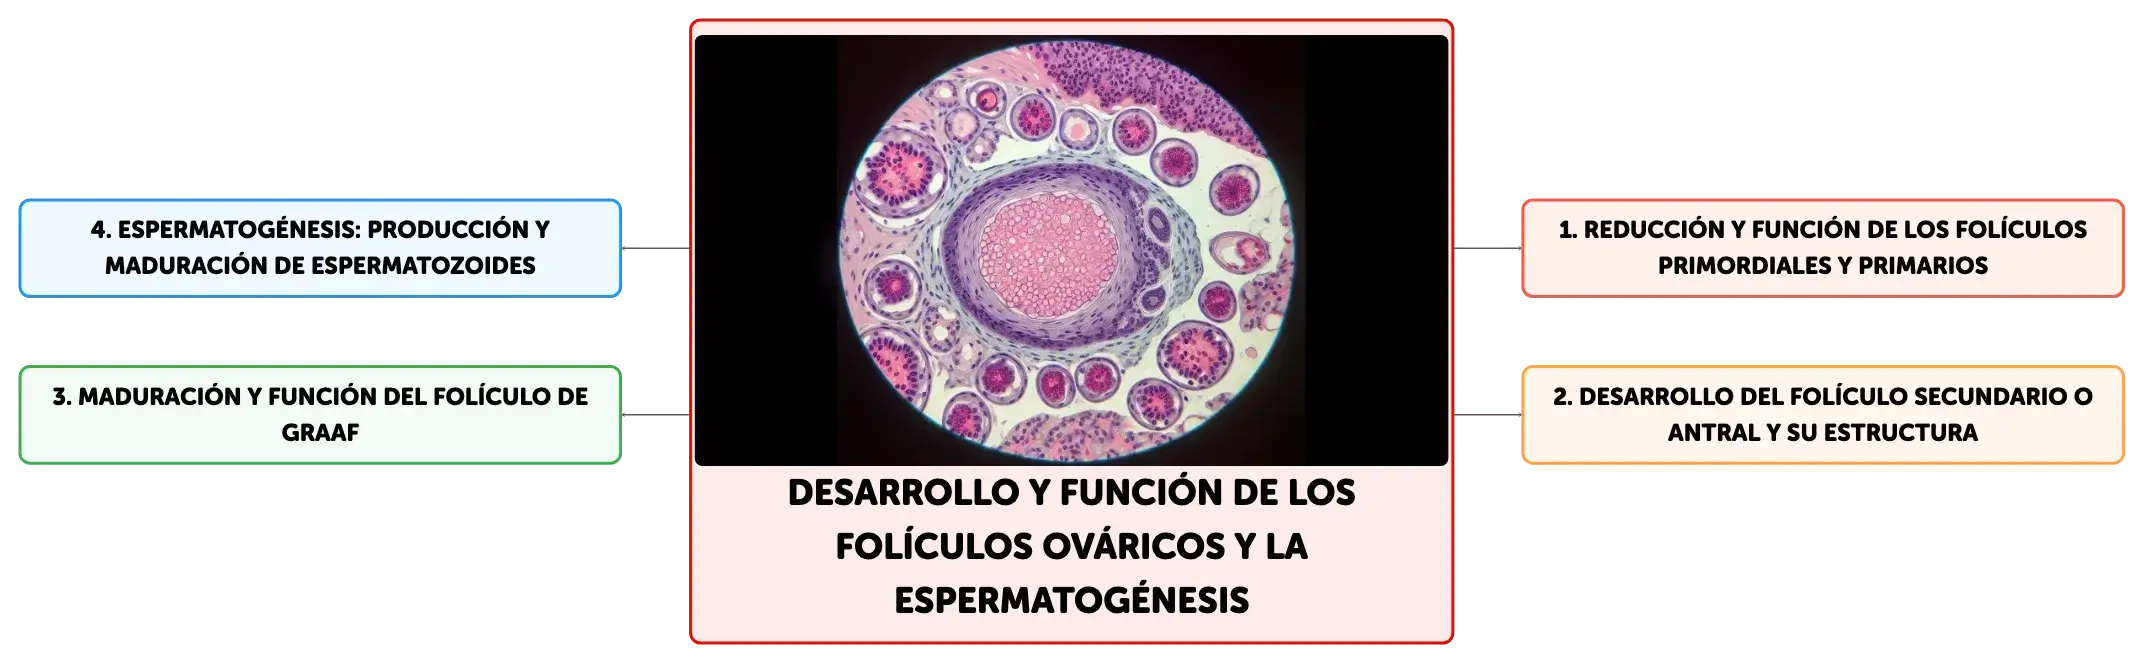 Desarrollo Y Función De Los Folículos Ováricos Y La Espermatogénesis Algor Cards 4604